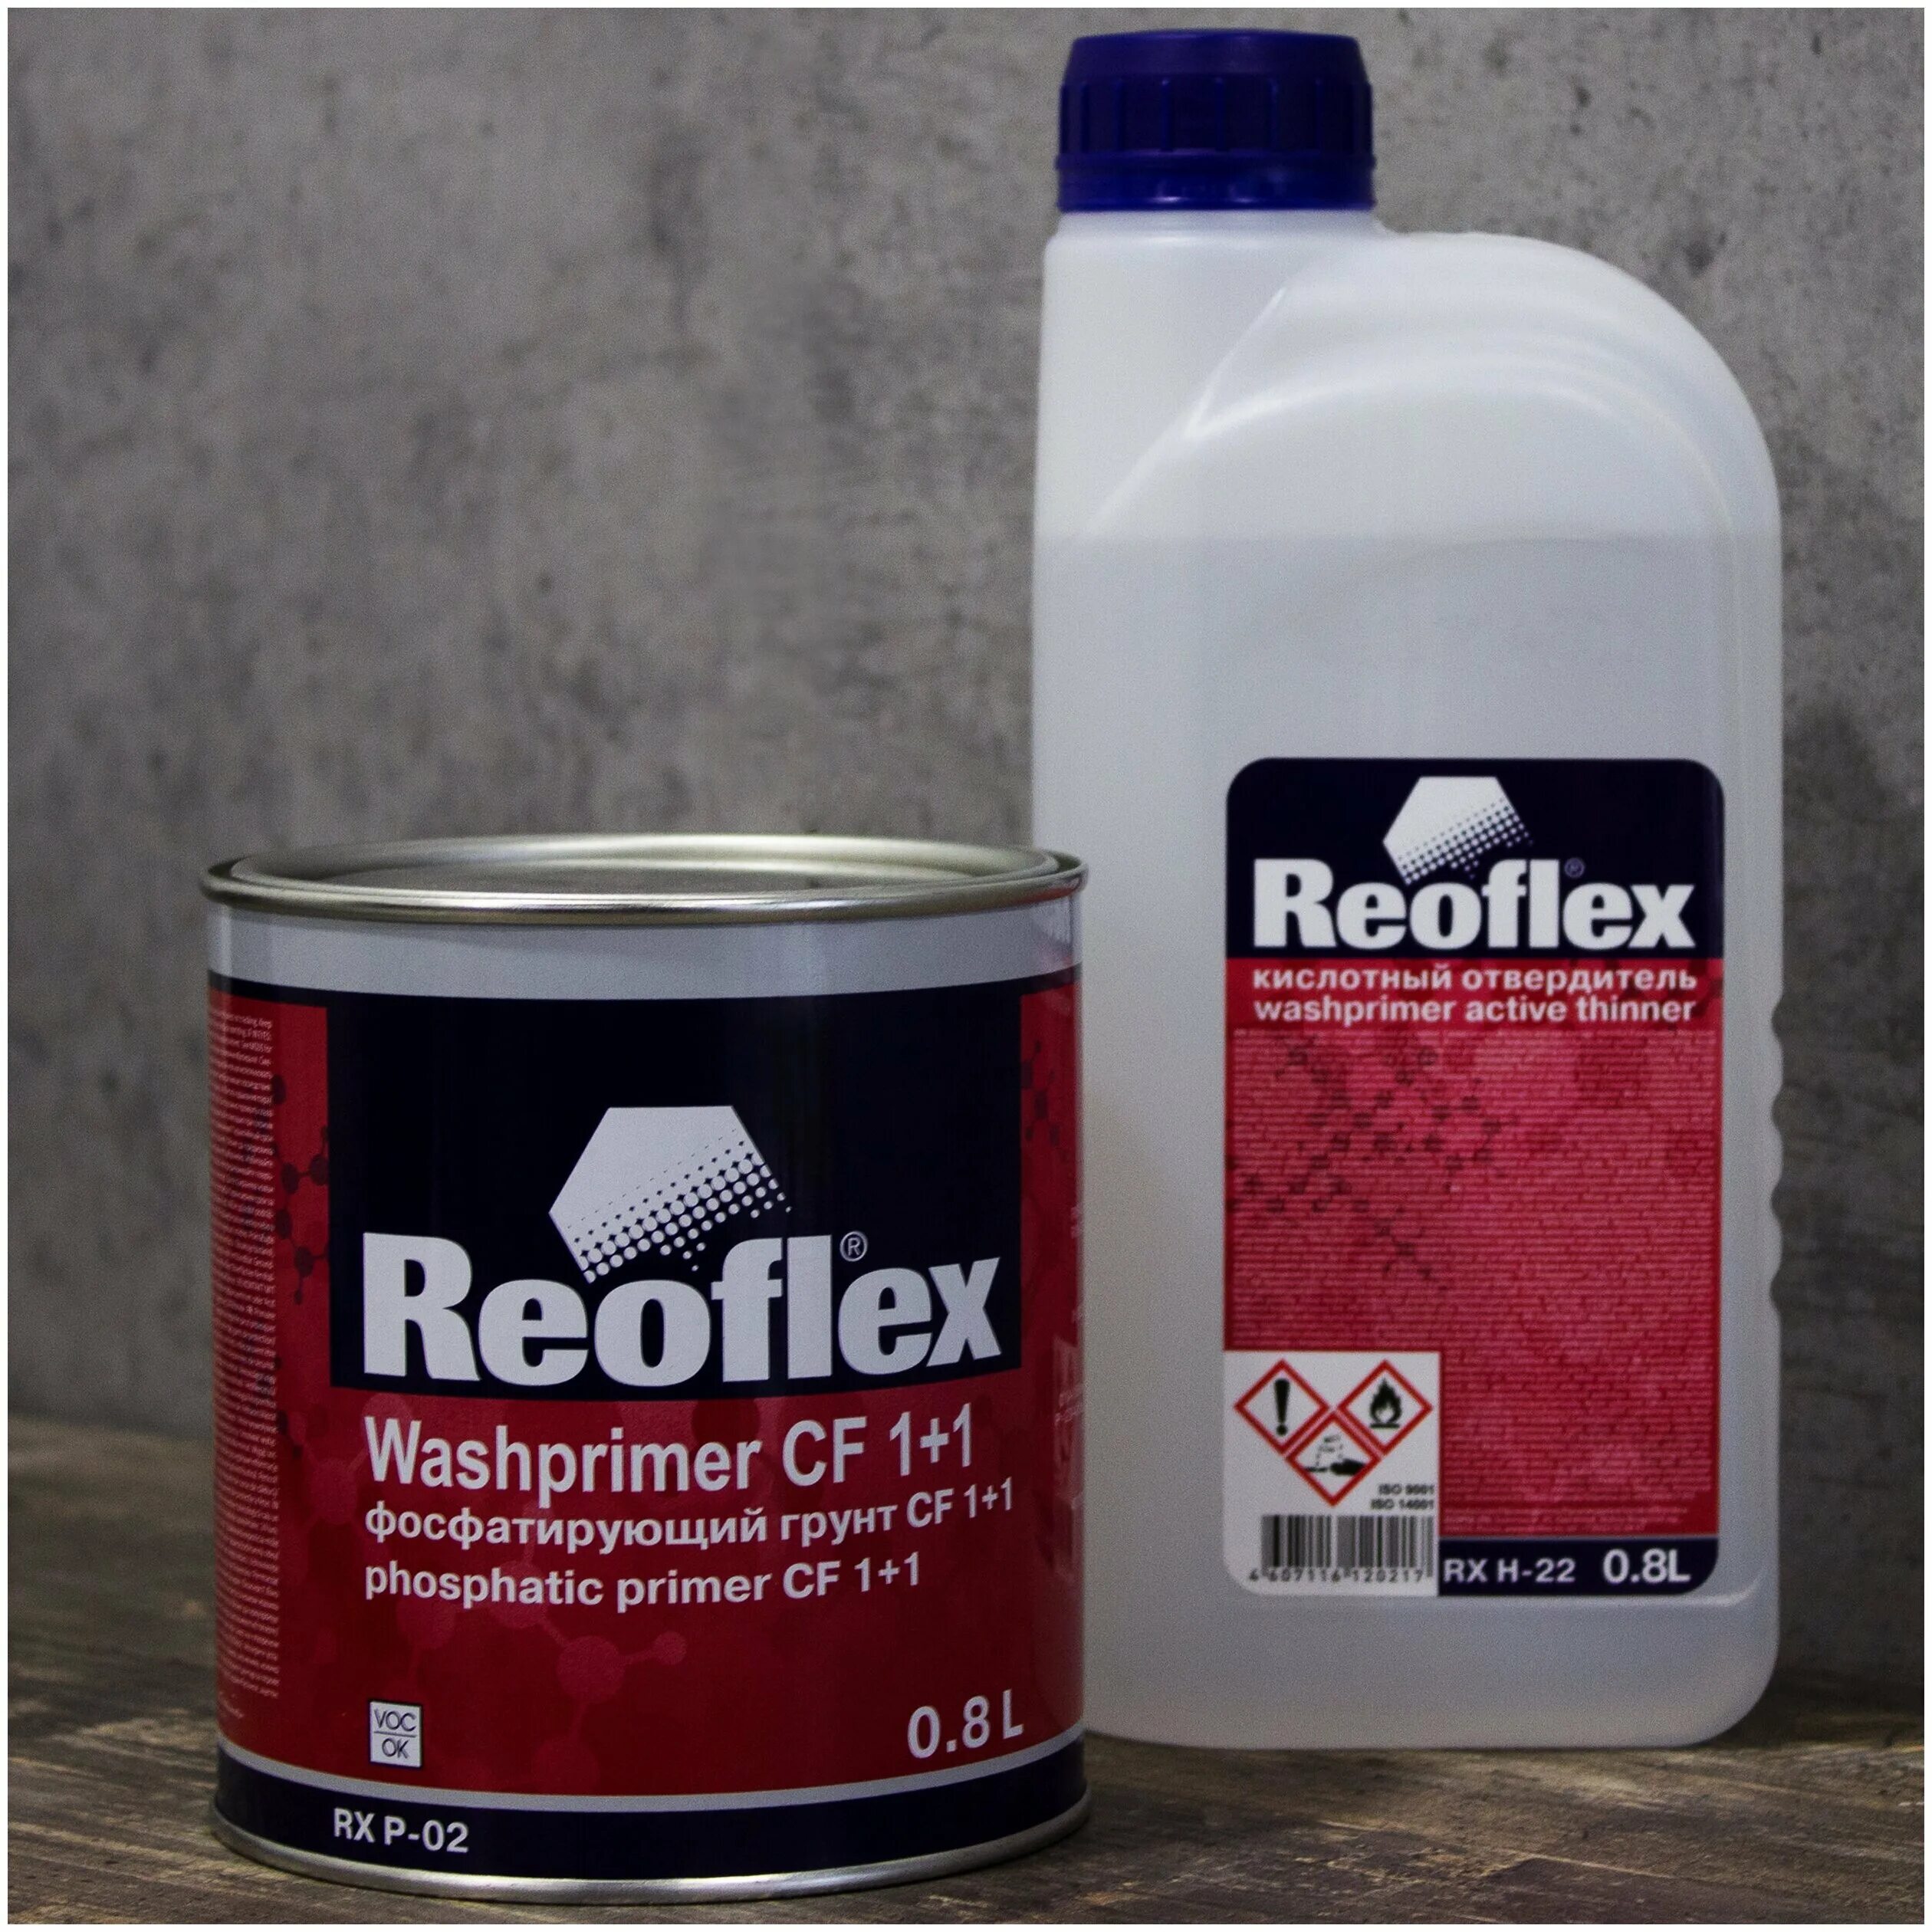 Reoflex RX P-02/800. 1к фосфатирующий грунт Reoflex(1,0) RX P-04. Reoflex грунт фосфатирующий 2k Wash primer CF 1+1 RX P-02 жёлтый. Кислотный отвердитель Reoflex RX H-22. Кислотный грунт для авто для чего